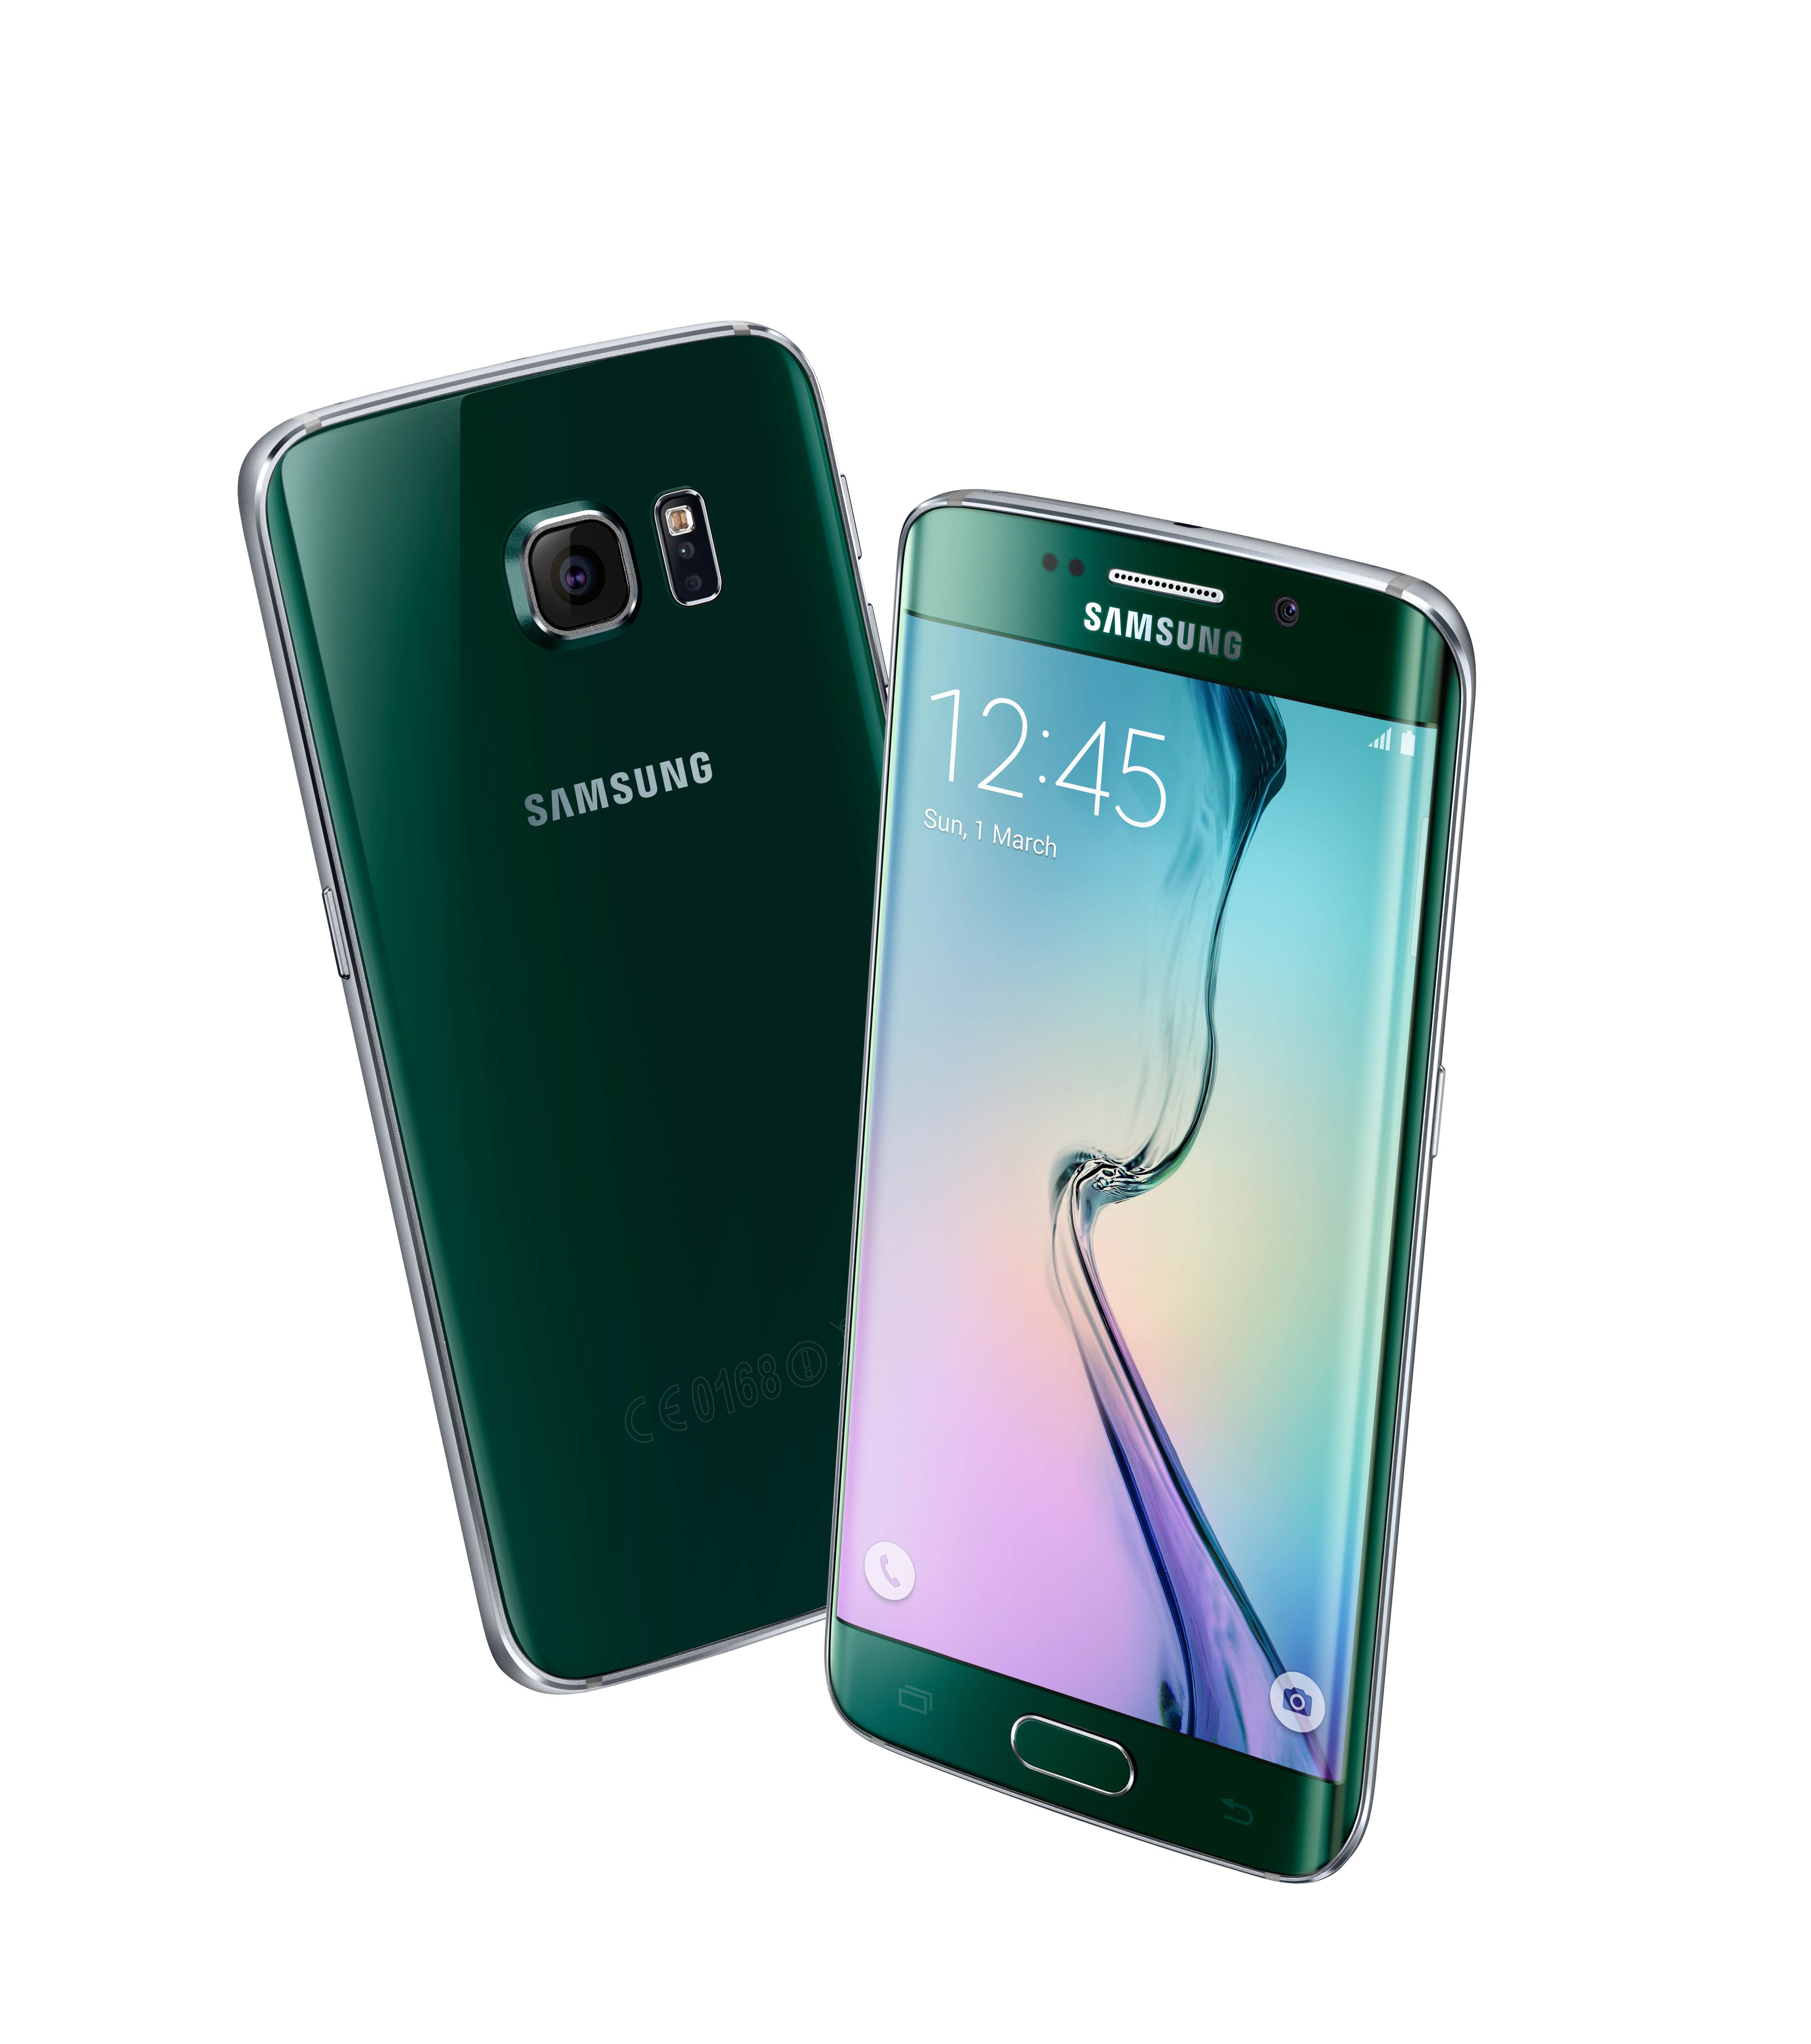 Érkezik a topázkék színű Galaxy S6 és a smaragdzöld színű Galaxy S6 edge